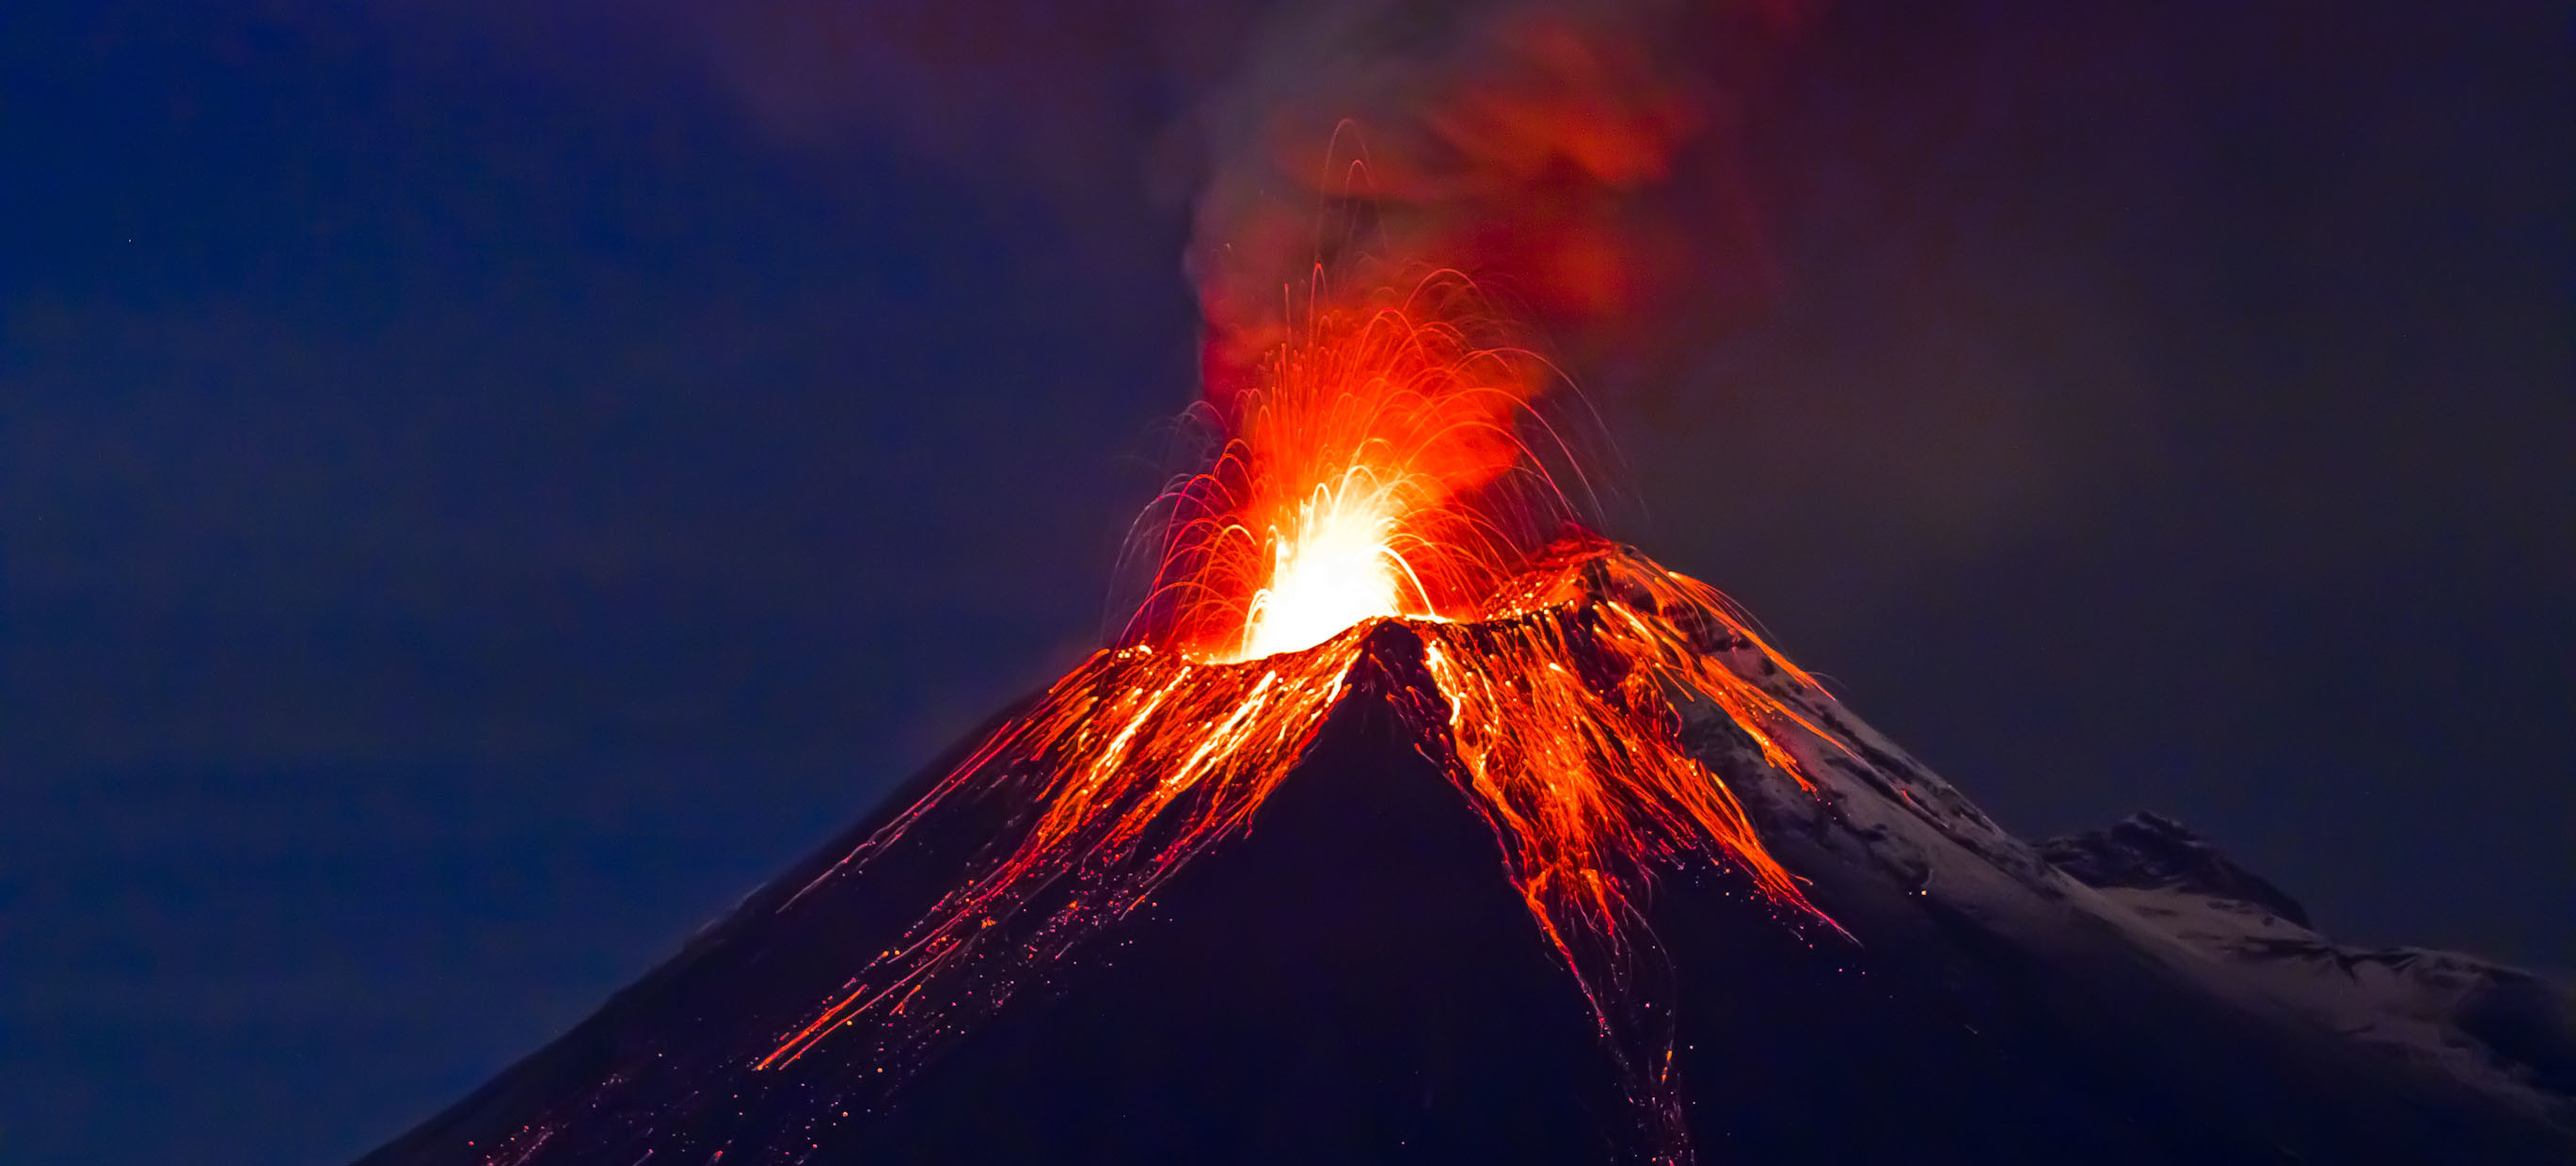 والپیپر فوران آتشفشان با گدازه های داغ و ترسناک برای IPhone